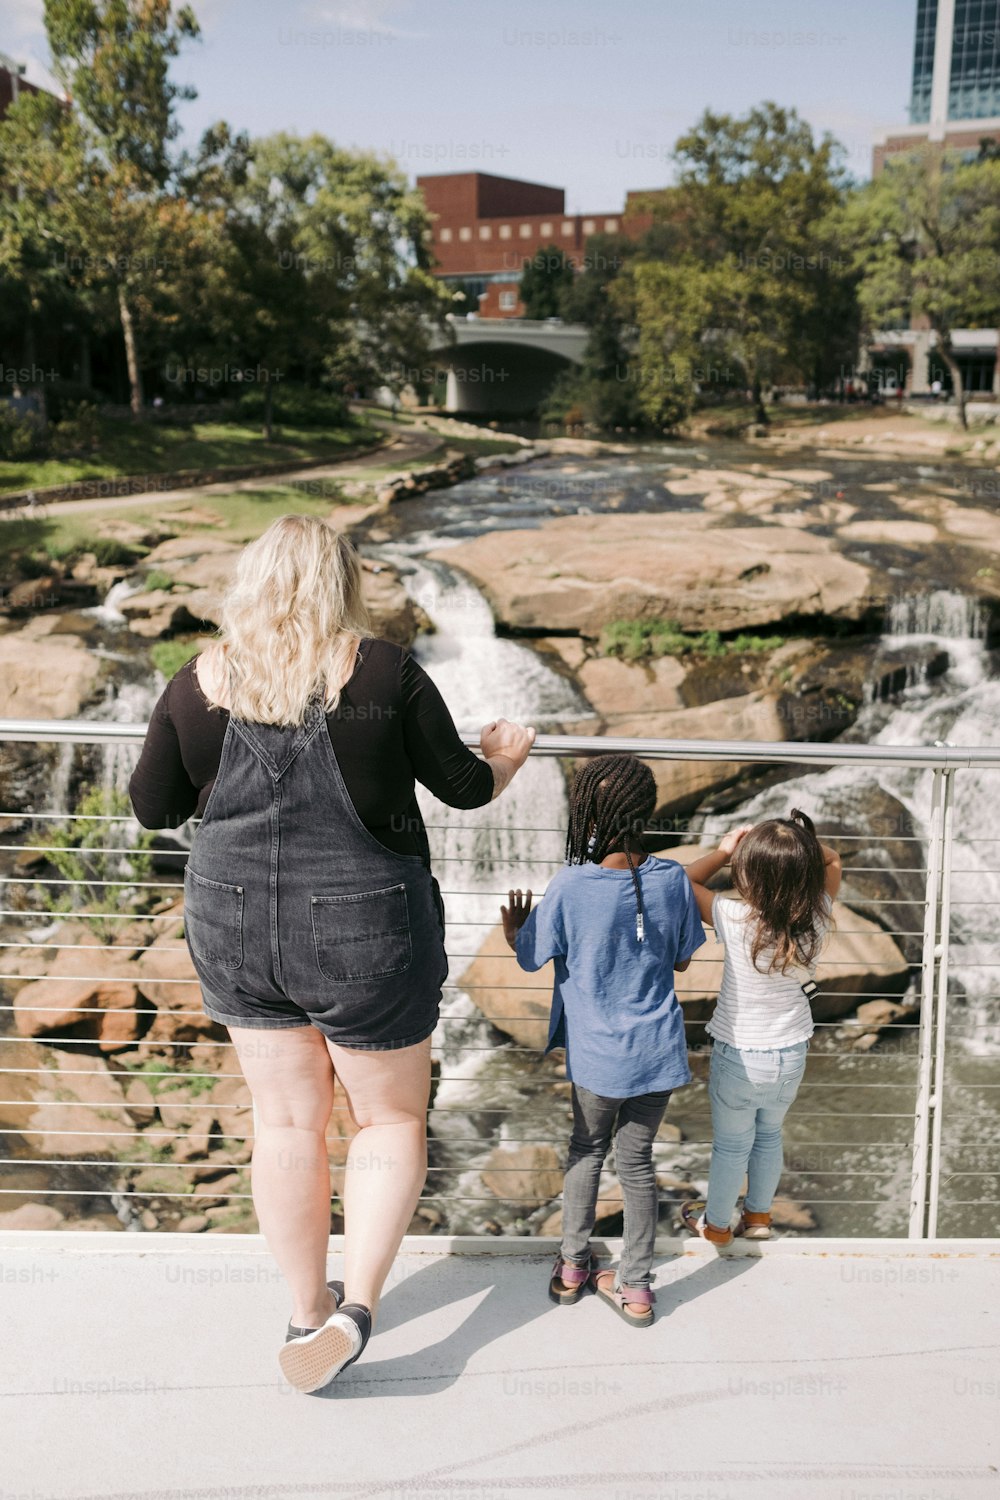 Una donna e due bambini stanno camminando vicino a una cascata